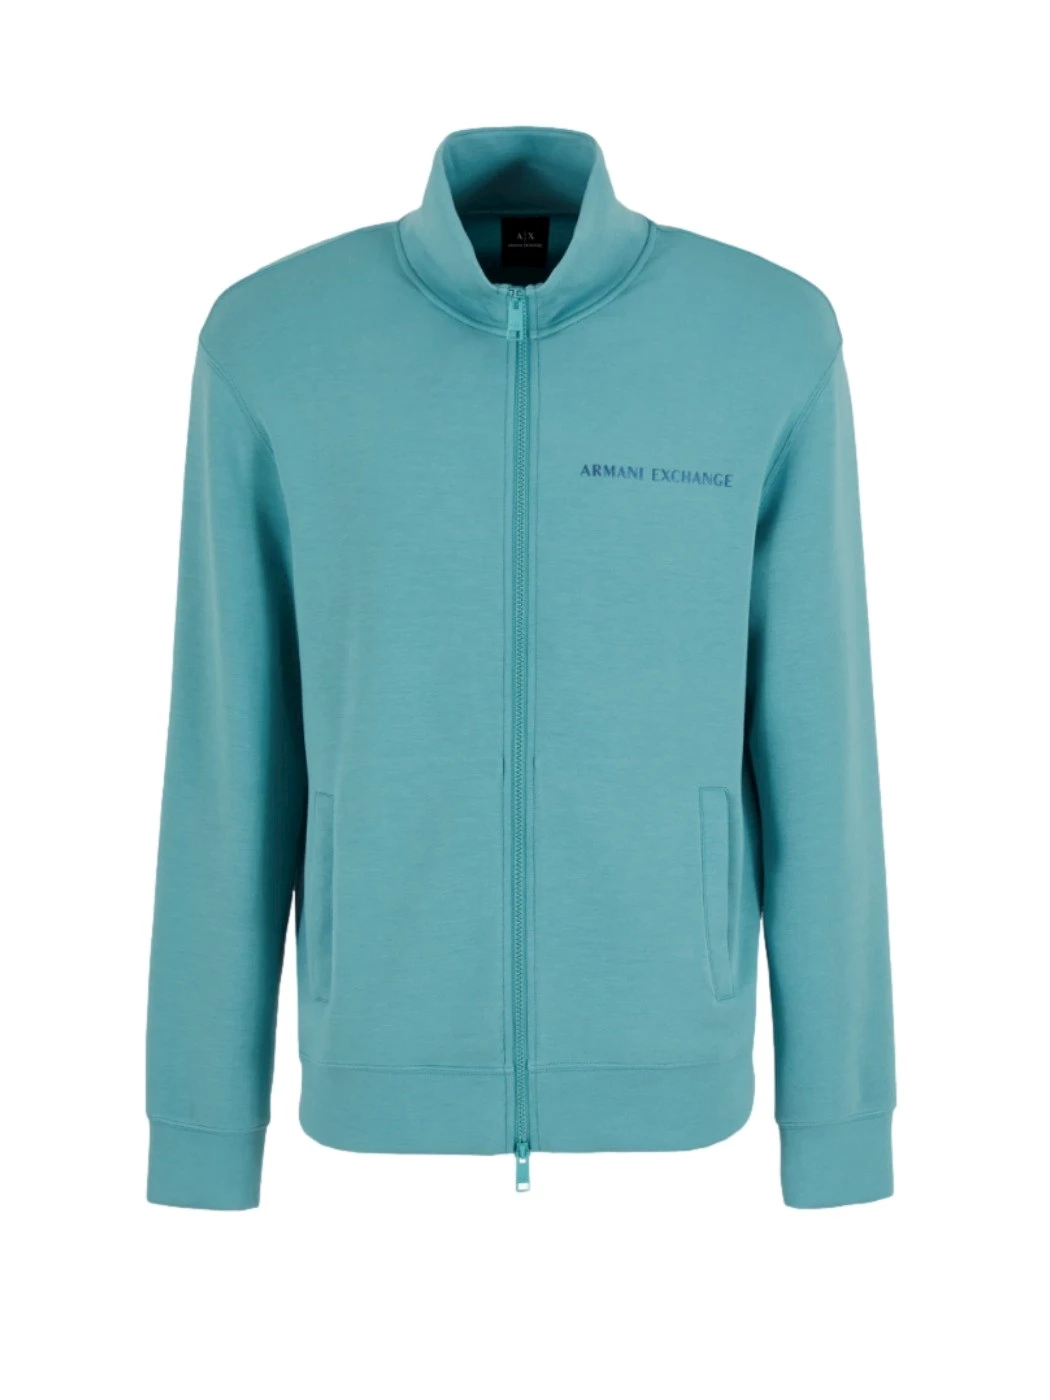 Armani Exchange full-zip sweatshirt